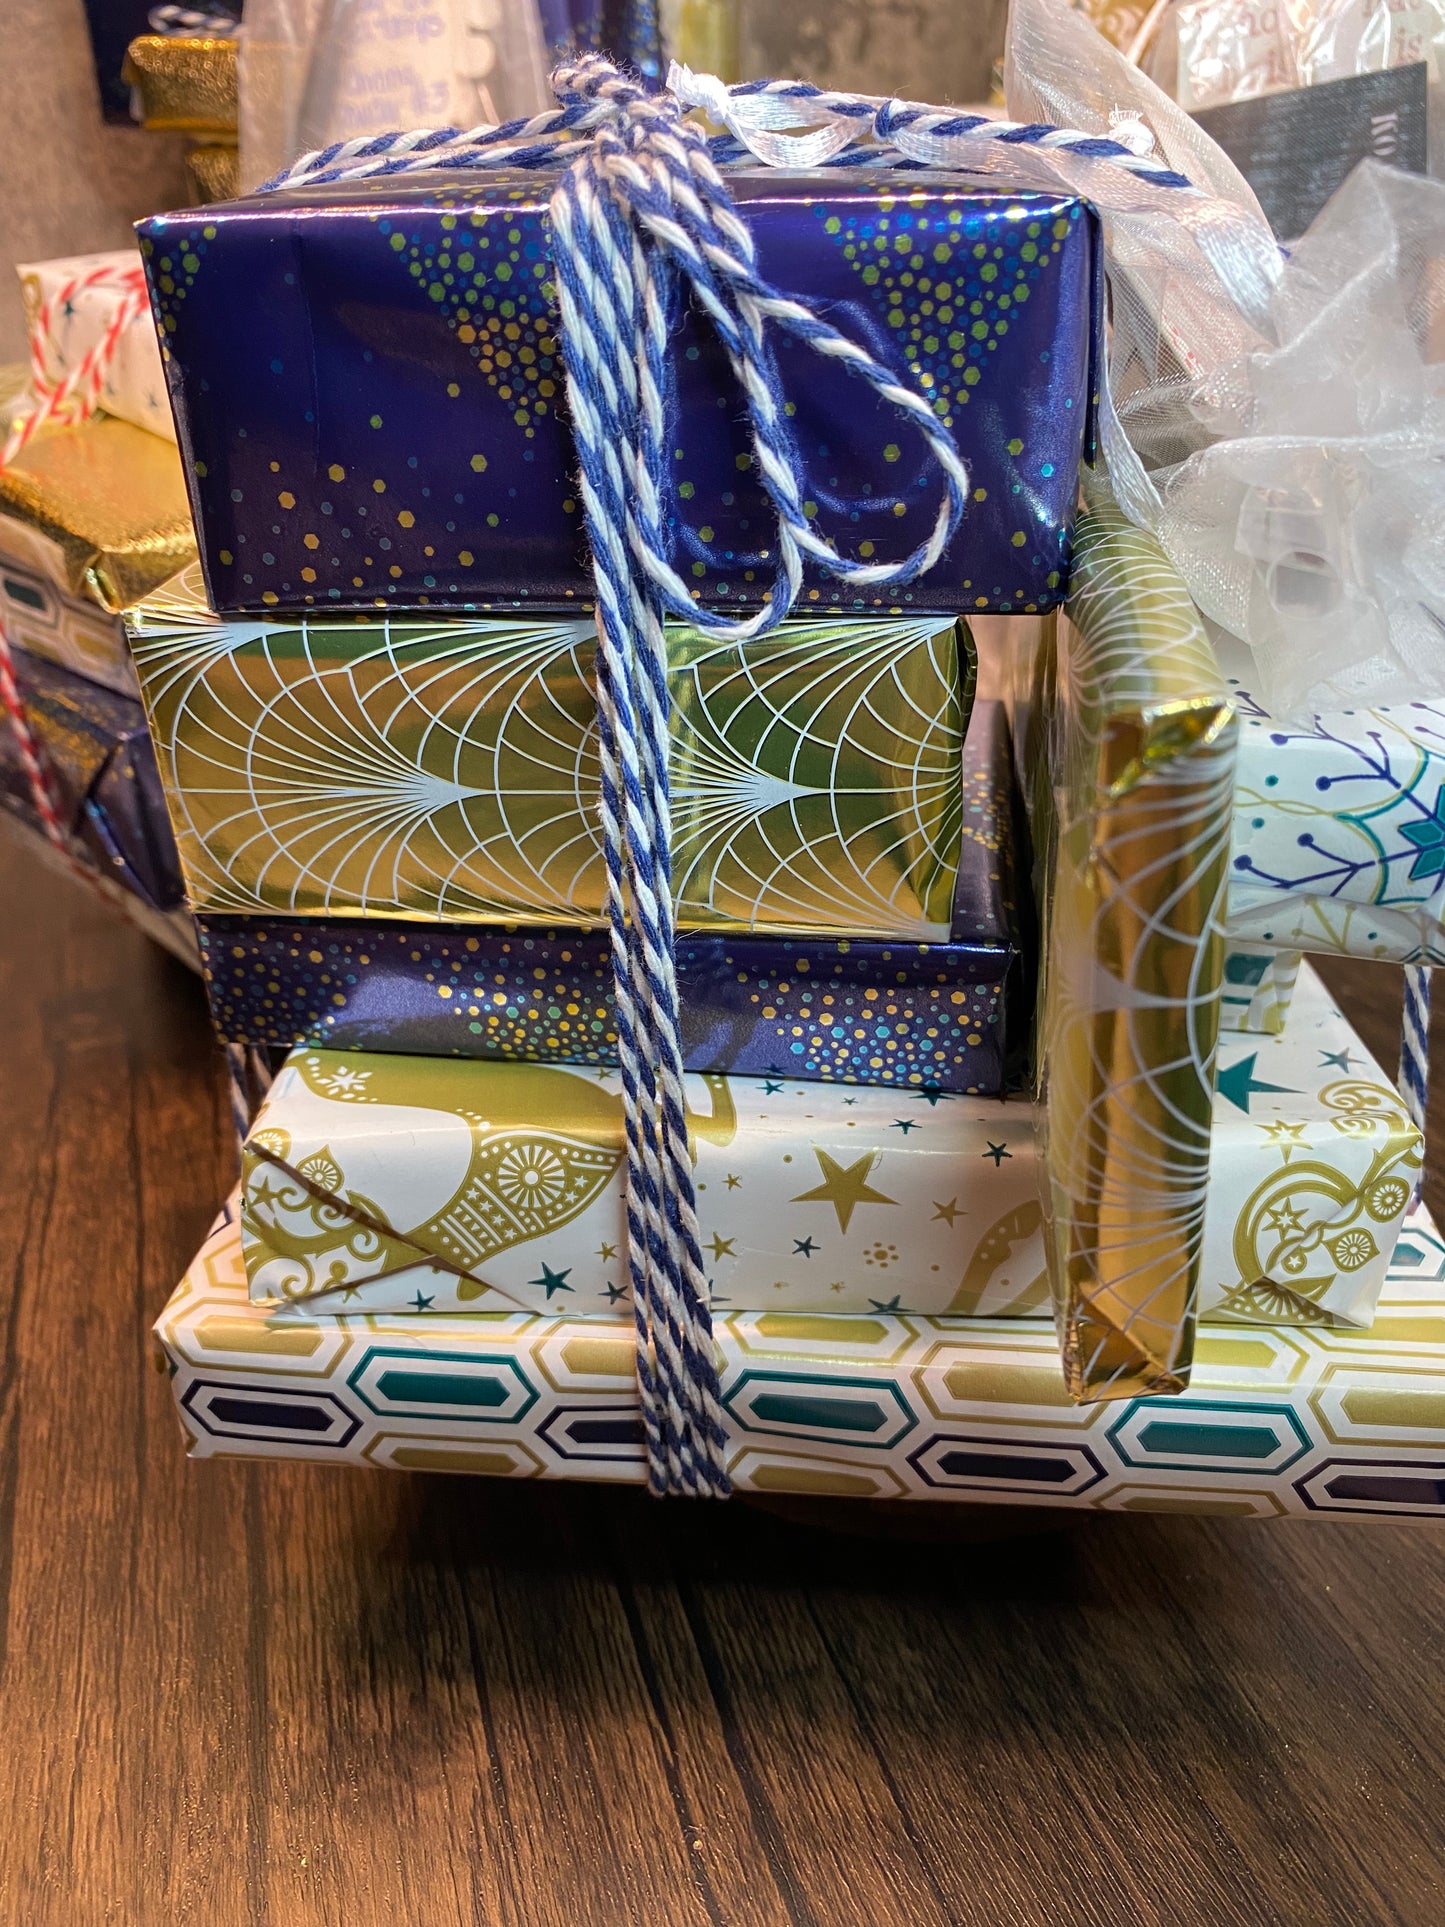 TPB’s UV Nail Gel Holiday Gift Set